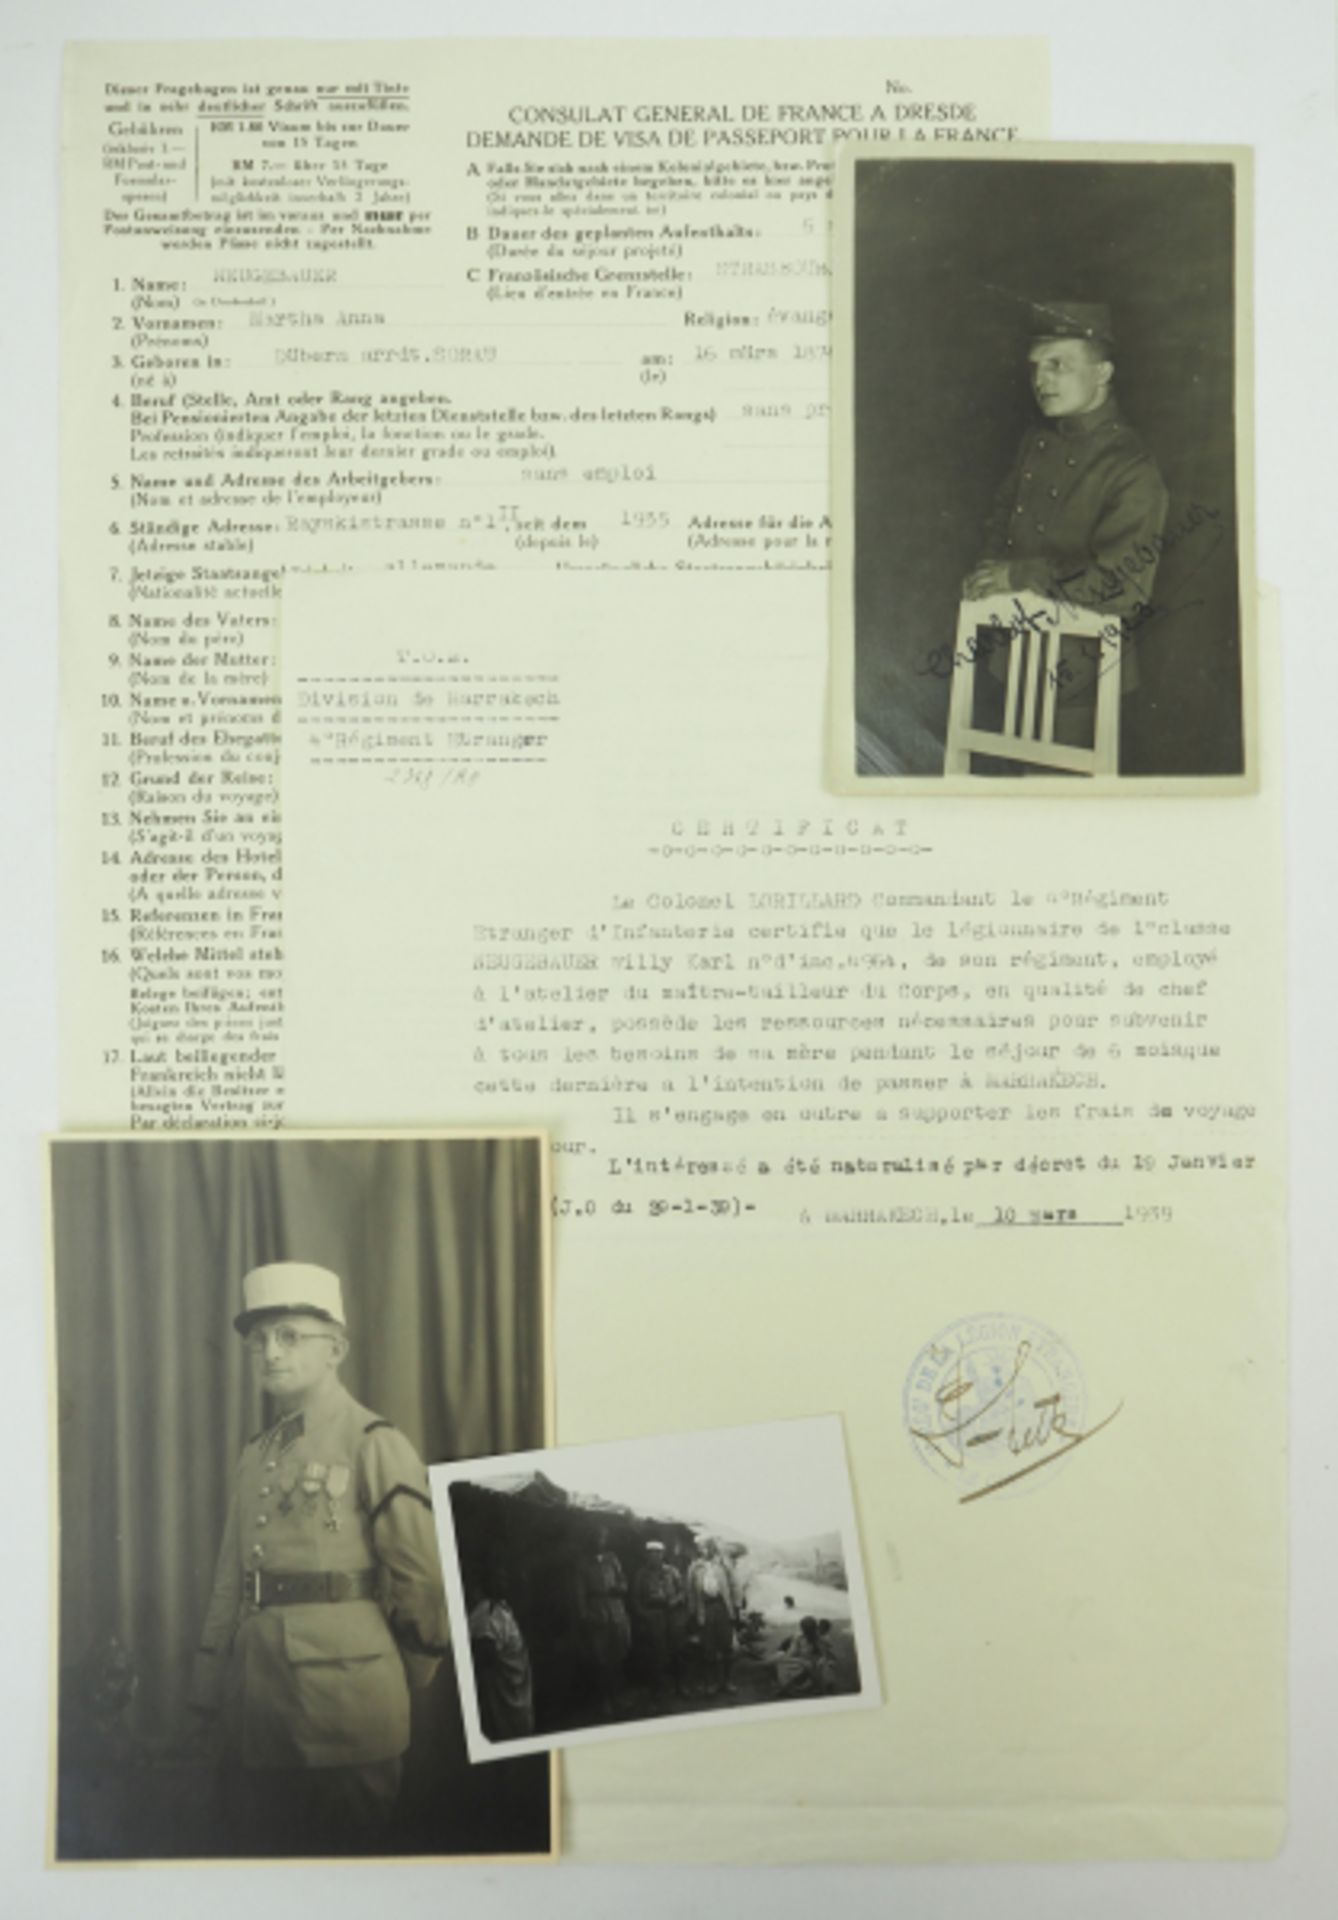 Frankreich: Nachlass eines deutschen Fremdenlegionärs - Division de Marrakech, 4. Reg. Etranger.